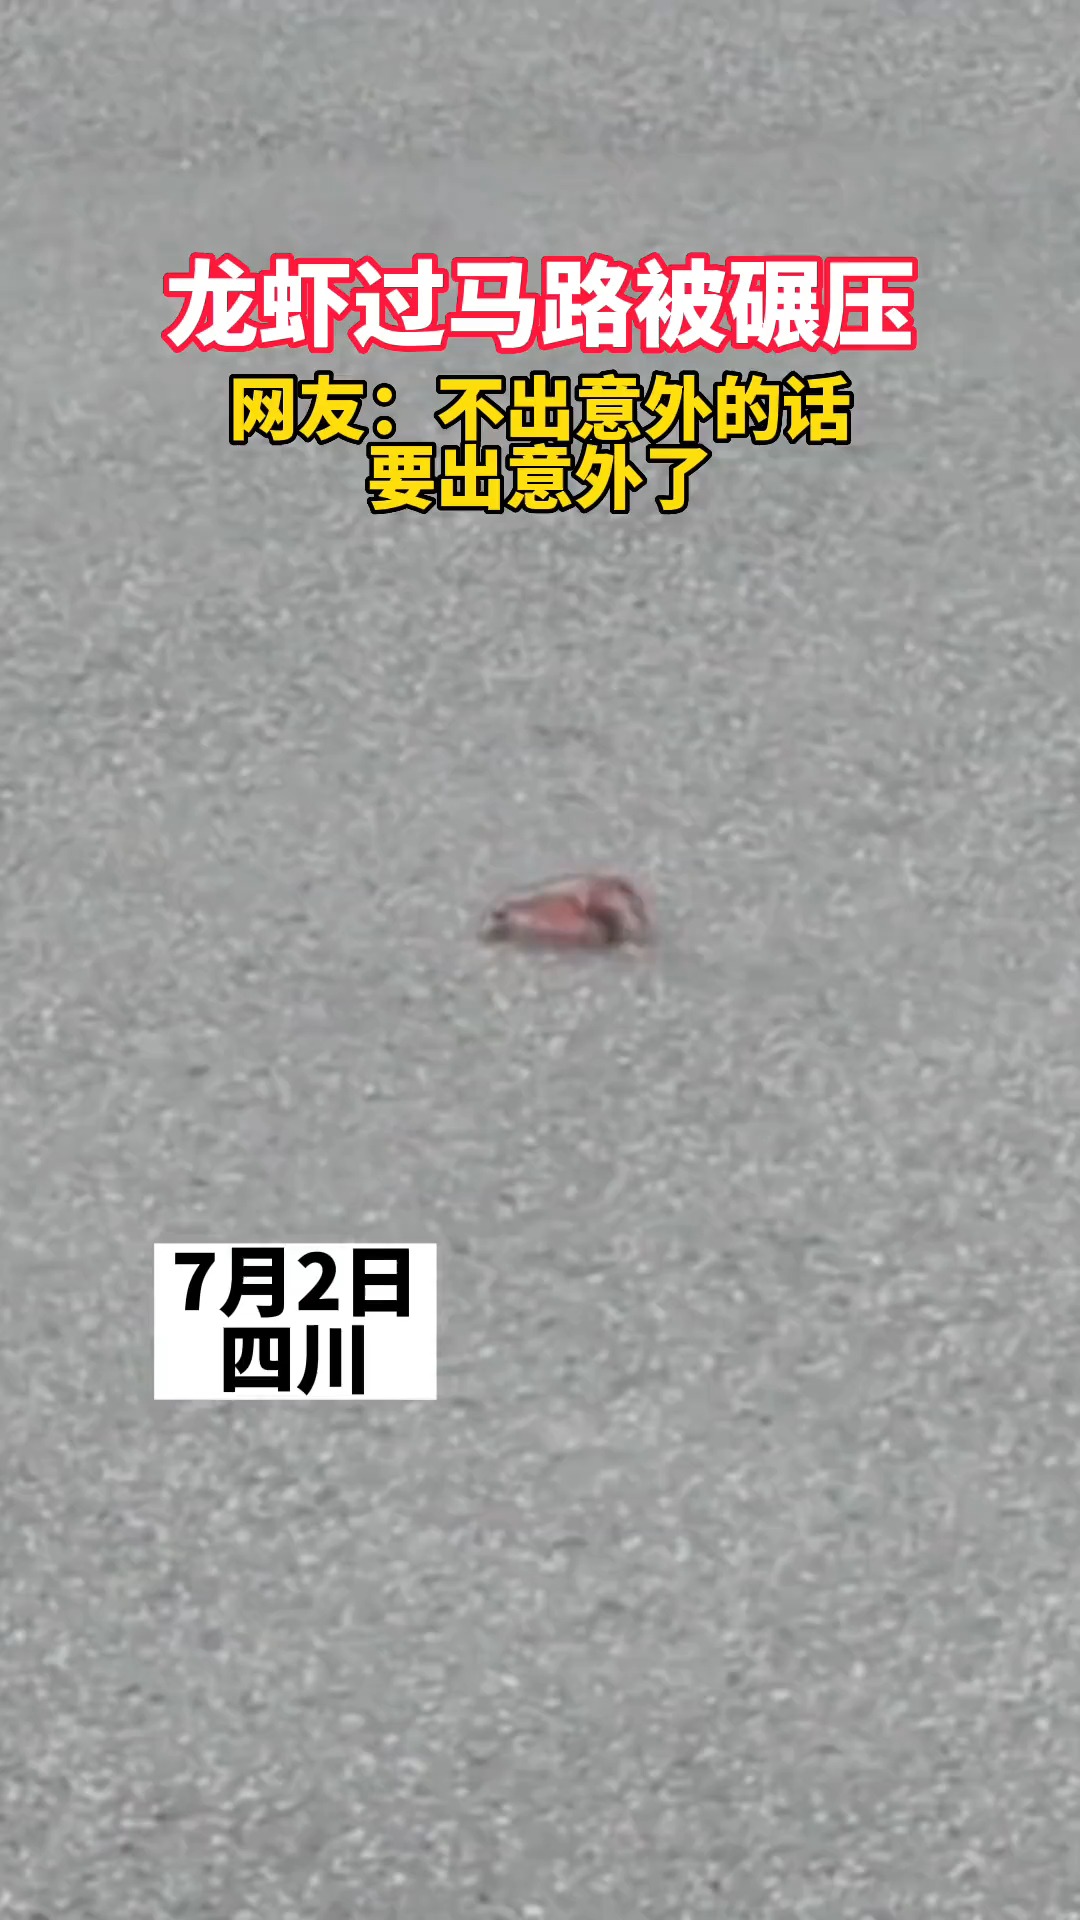 龙虾过马路被碾压 ，网友：不出意外的话要出意外了